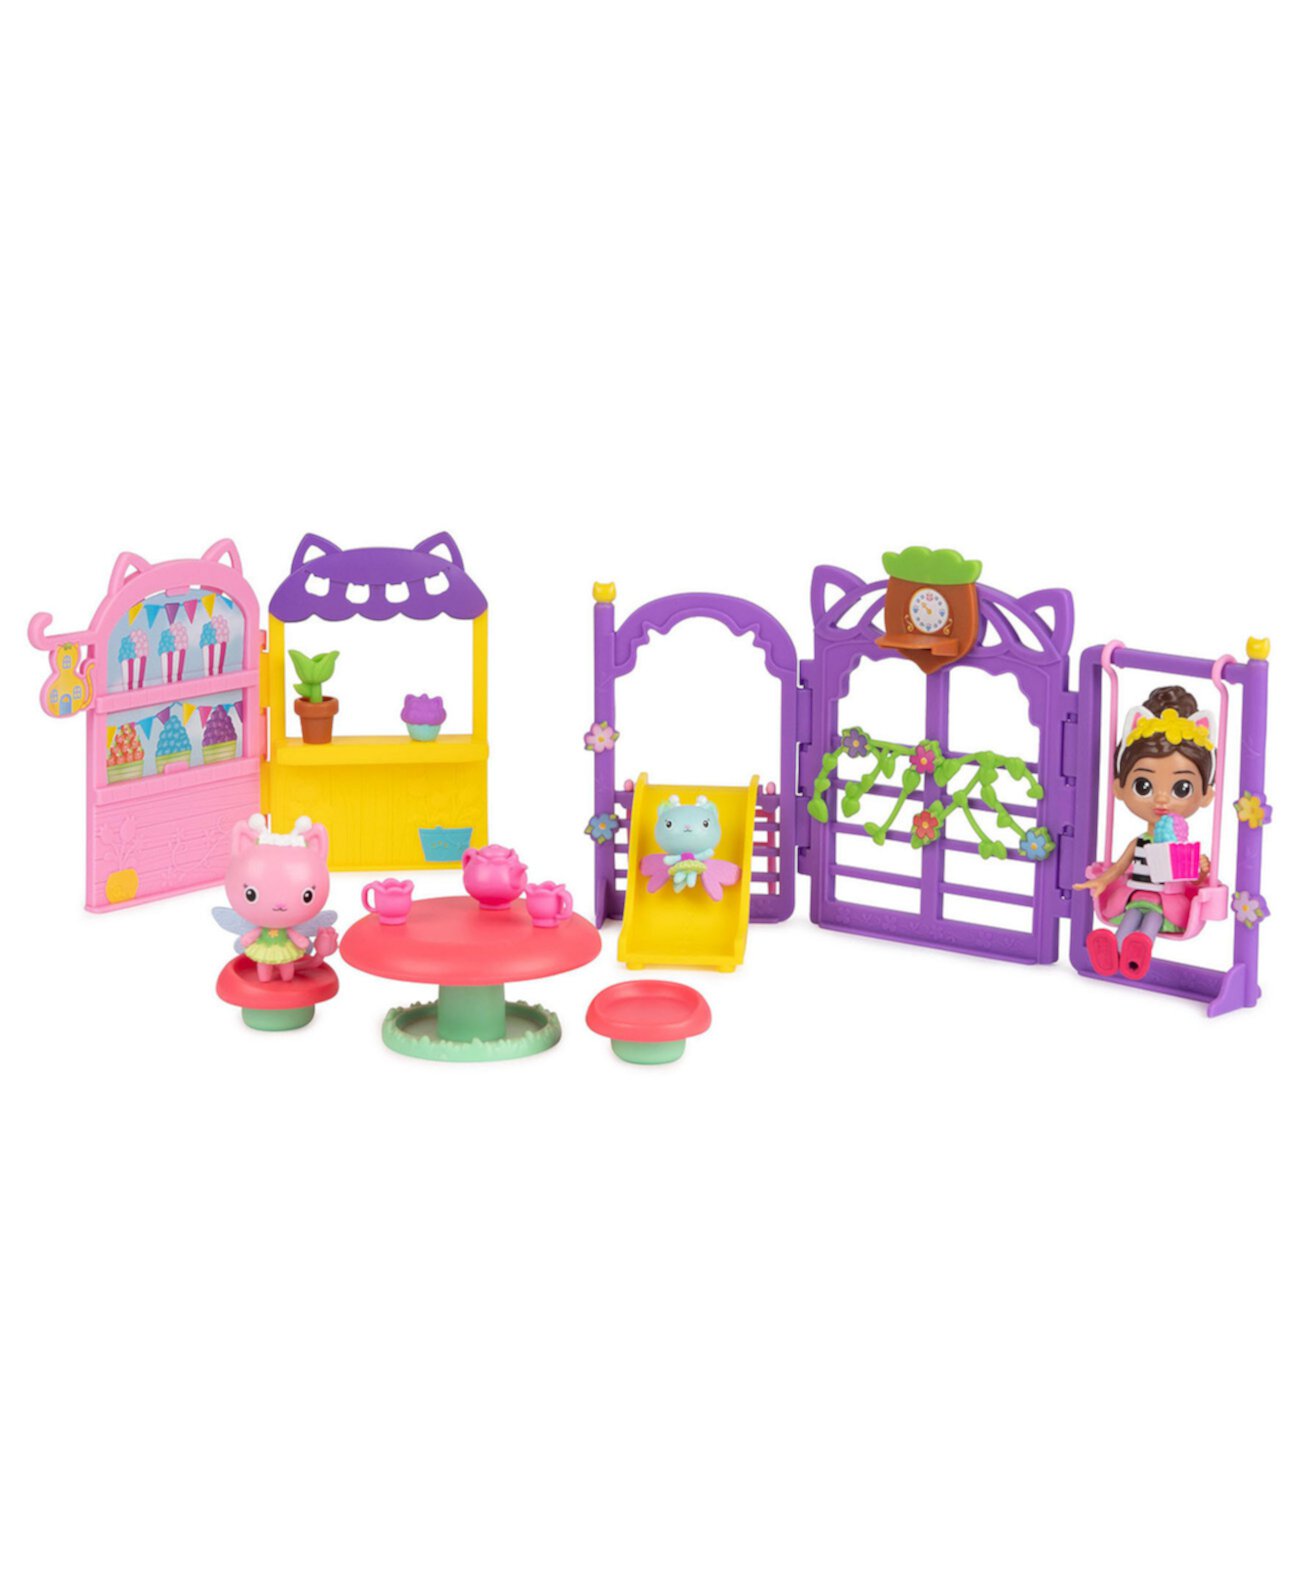 KittyFairy Garden Party, игровой набор из 18 предметов с 3 игрушечными фигурками, игрушки-сюрпризы, аксессуары для кукольного домика, детские игрушки для девочек и мальчиков 3 плюс Gabby's Dollhouse